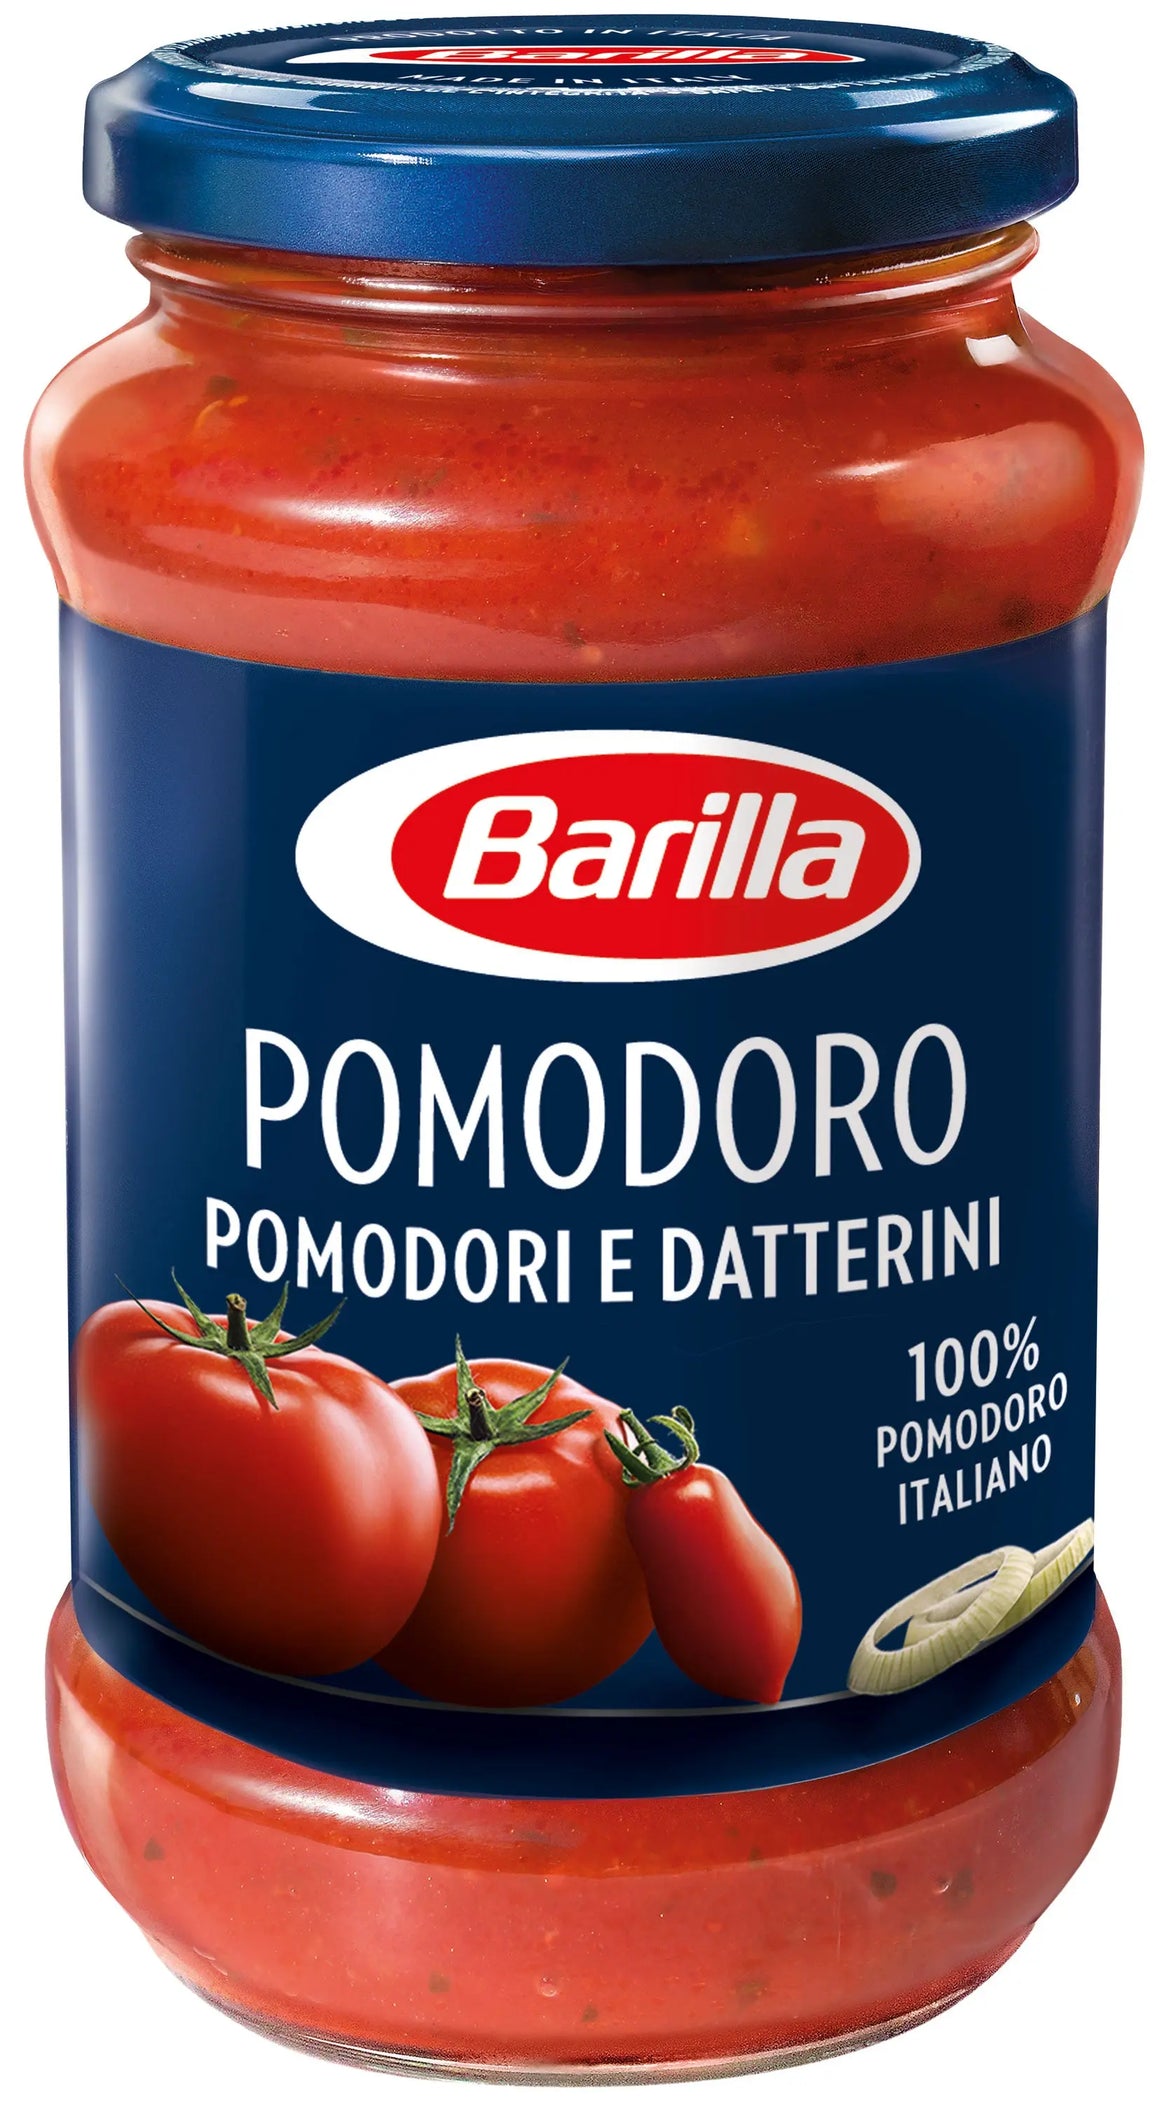 Barilla Pomodoro Tomato Pasta Sauce with Italian Tomato 400g Barilla